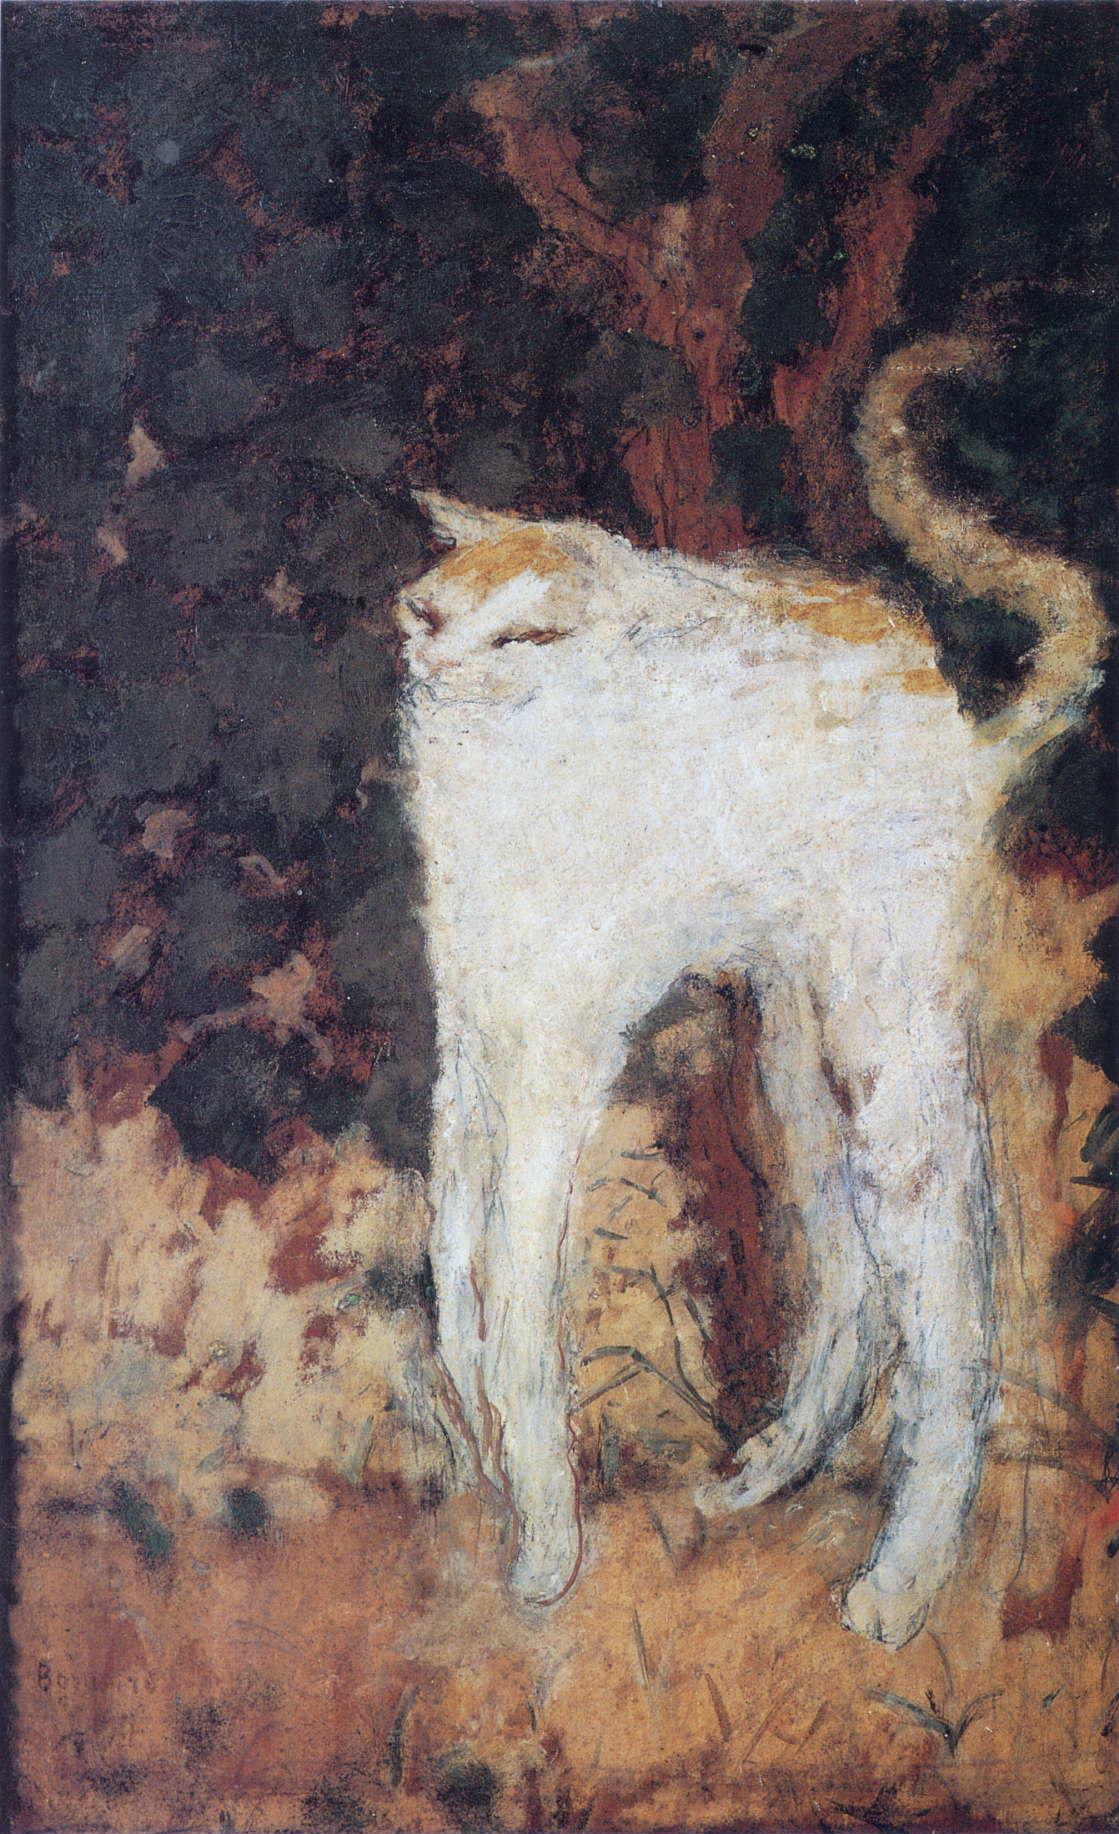 Weiße Katze by Pierre Bonnard - 1894 - 51 x 33 cm Musée d'Orsay